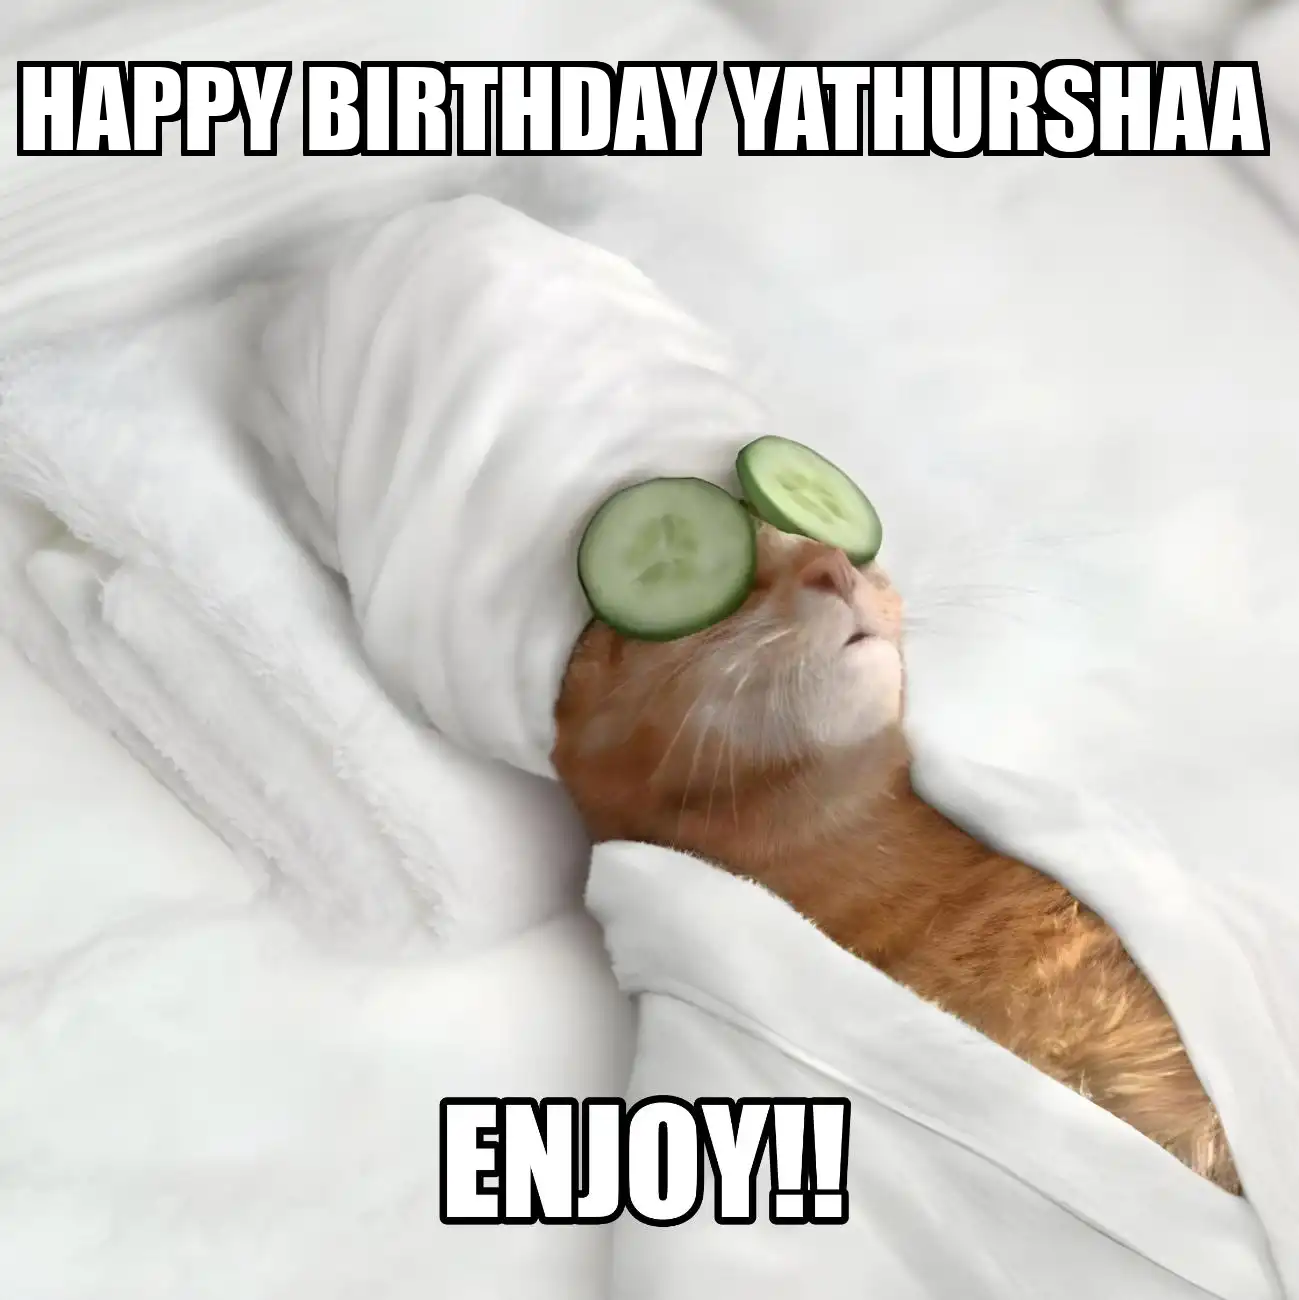 Happy Birthday Yathurshaa Enjoy Cat Meme